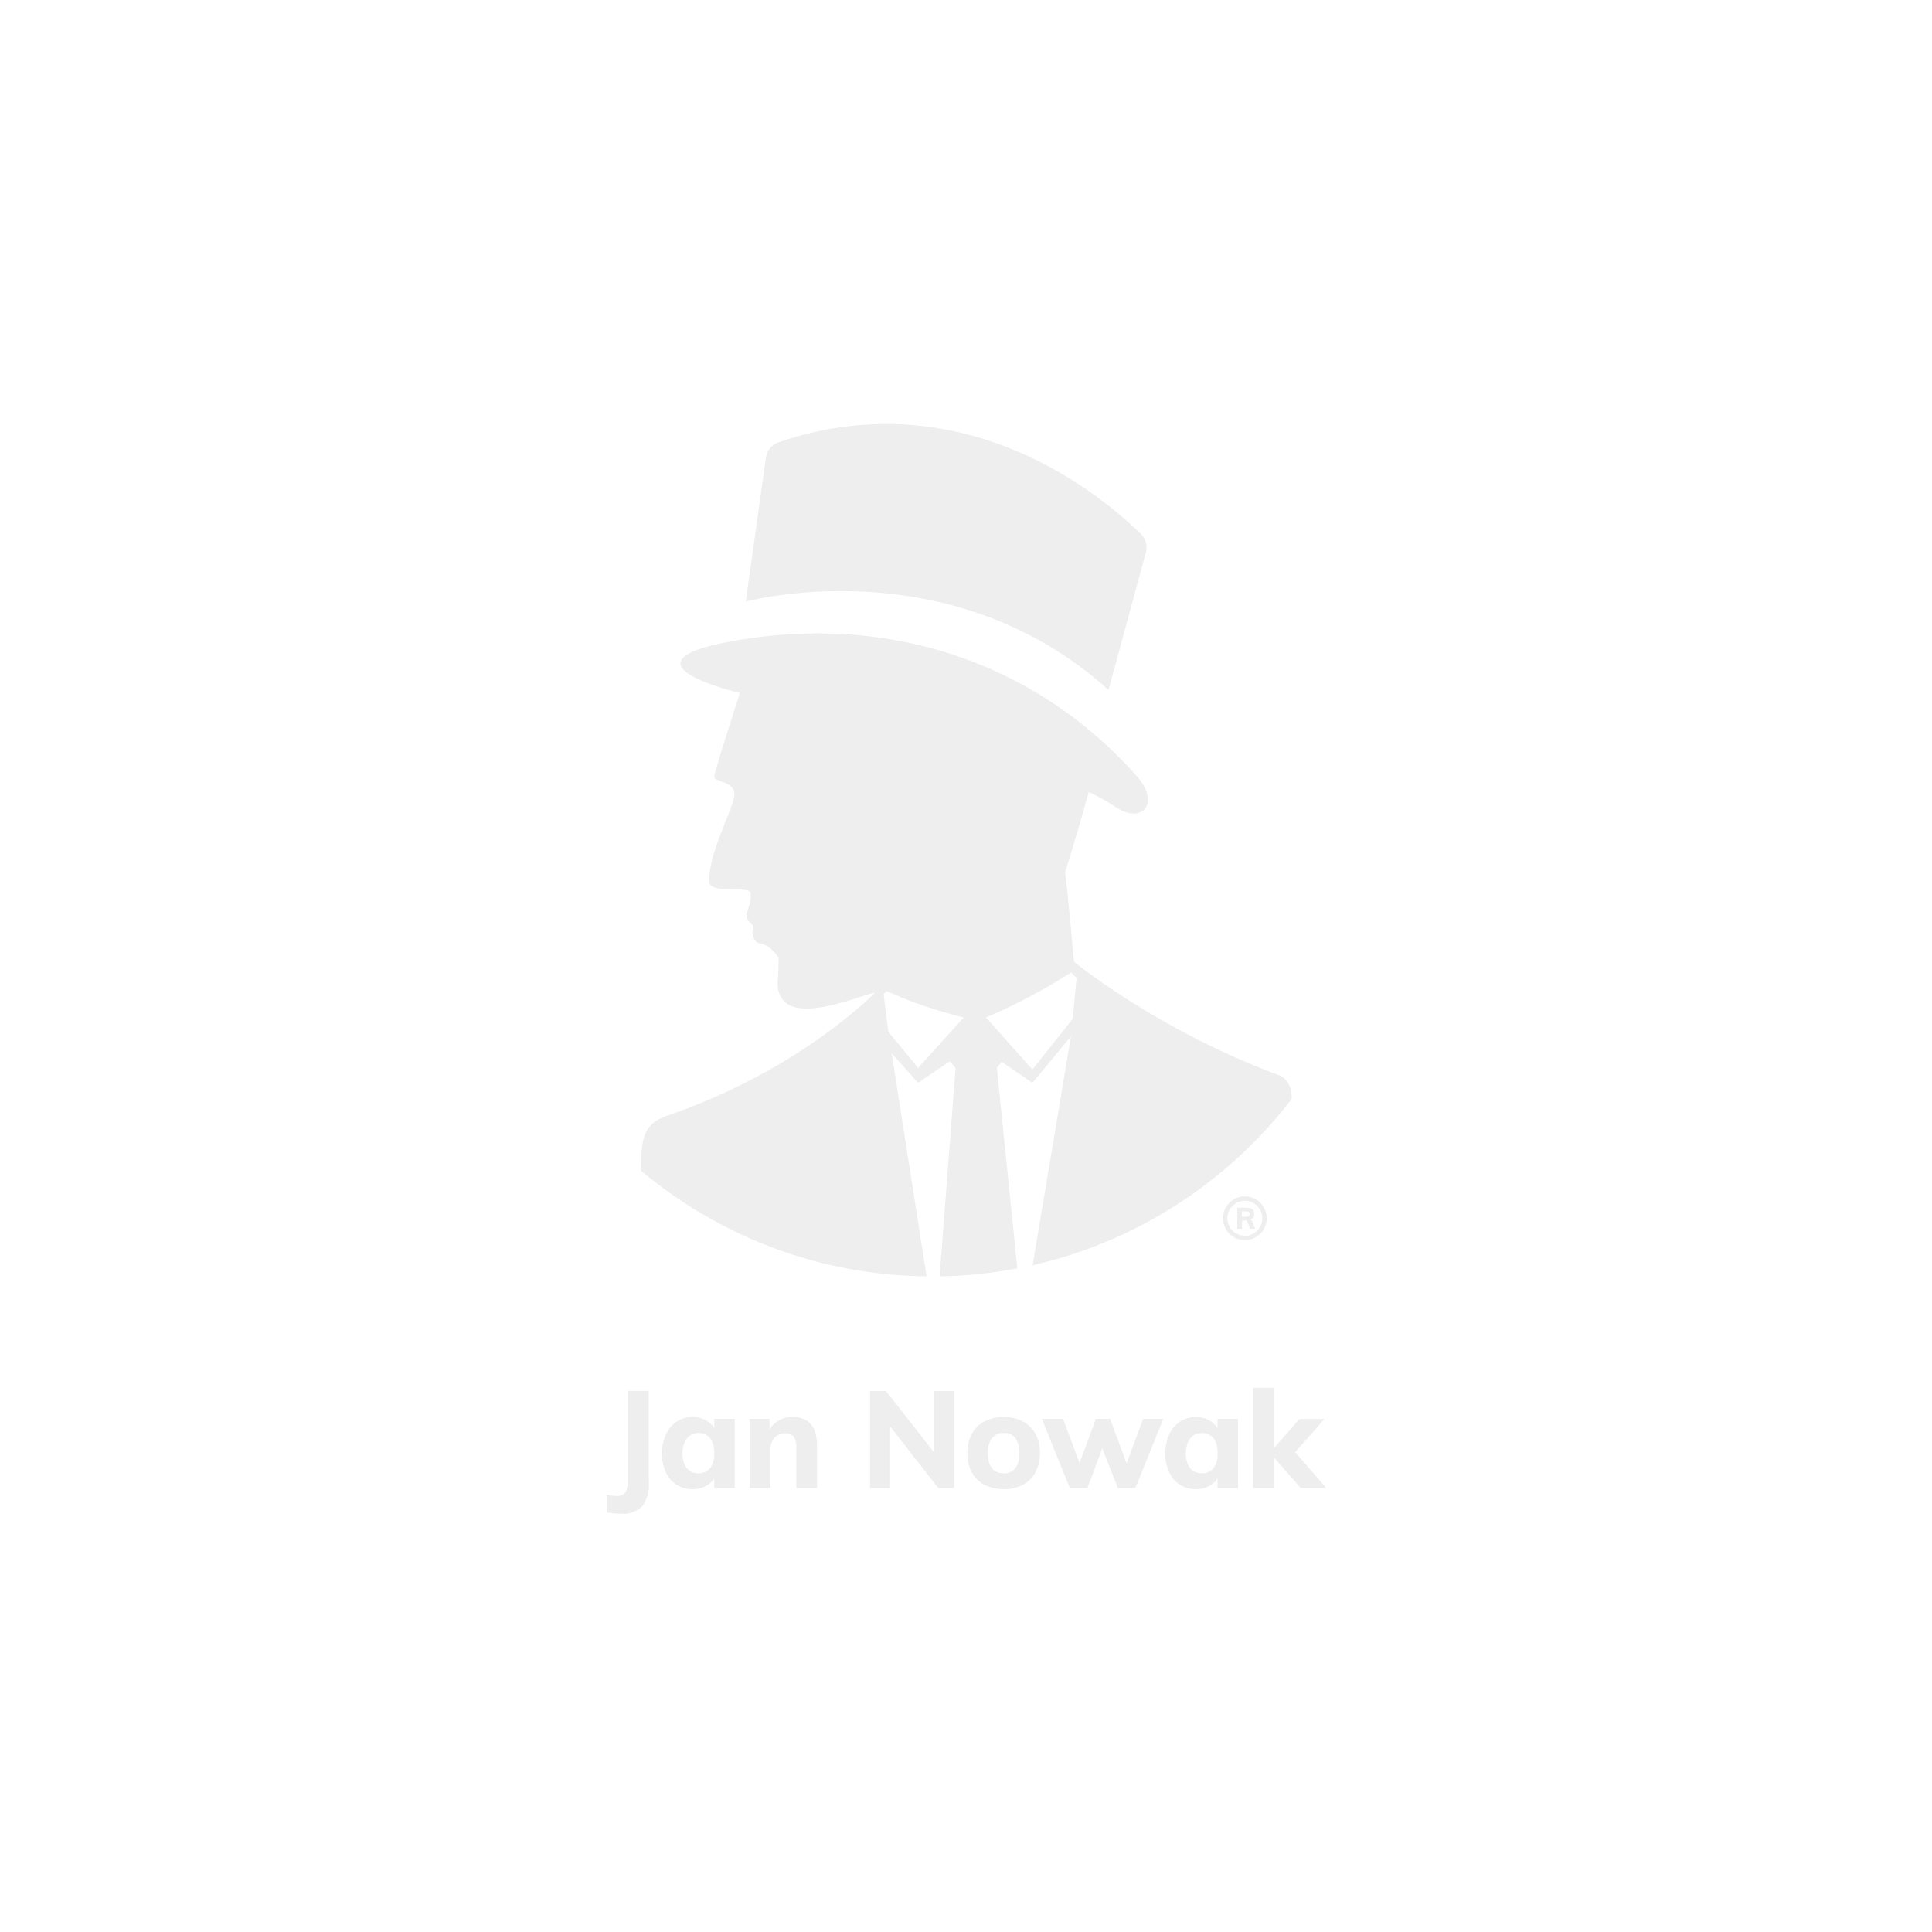 JAN NOWAK model EWA 900x380x400 biurowa nadstawka do szafy szara